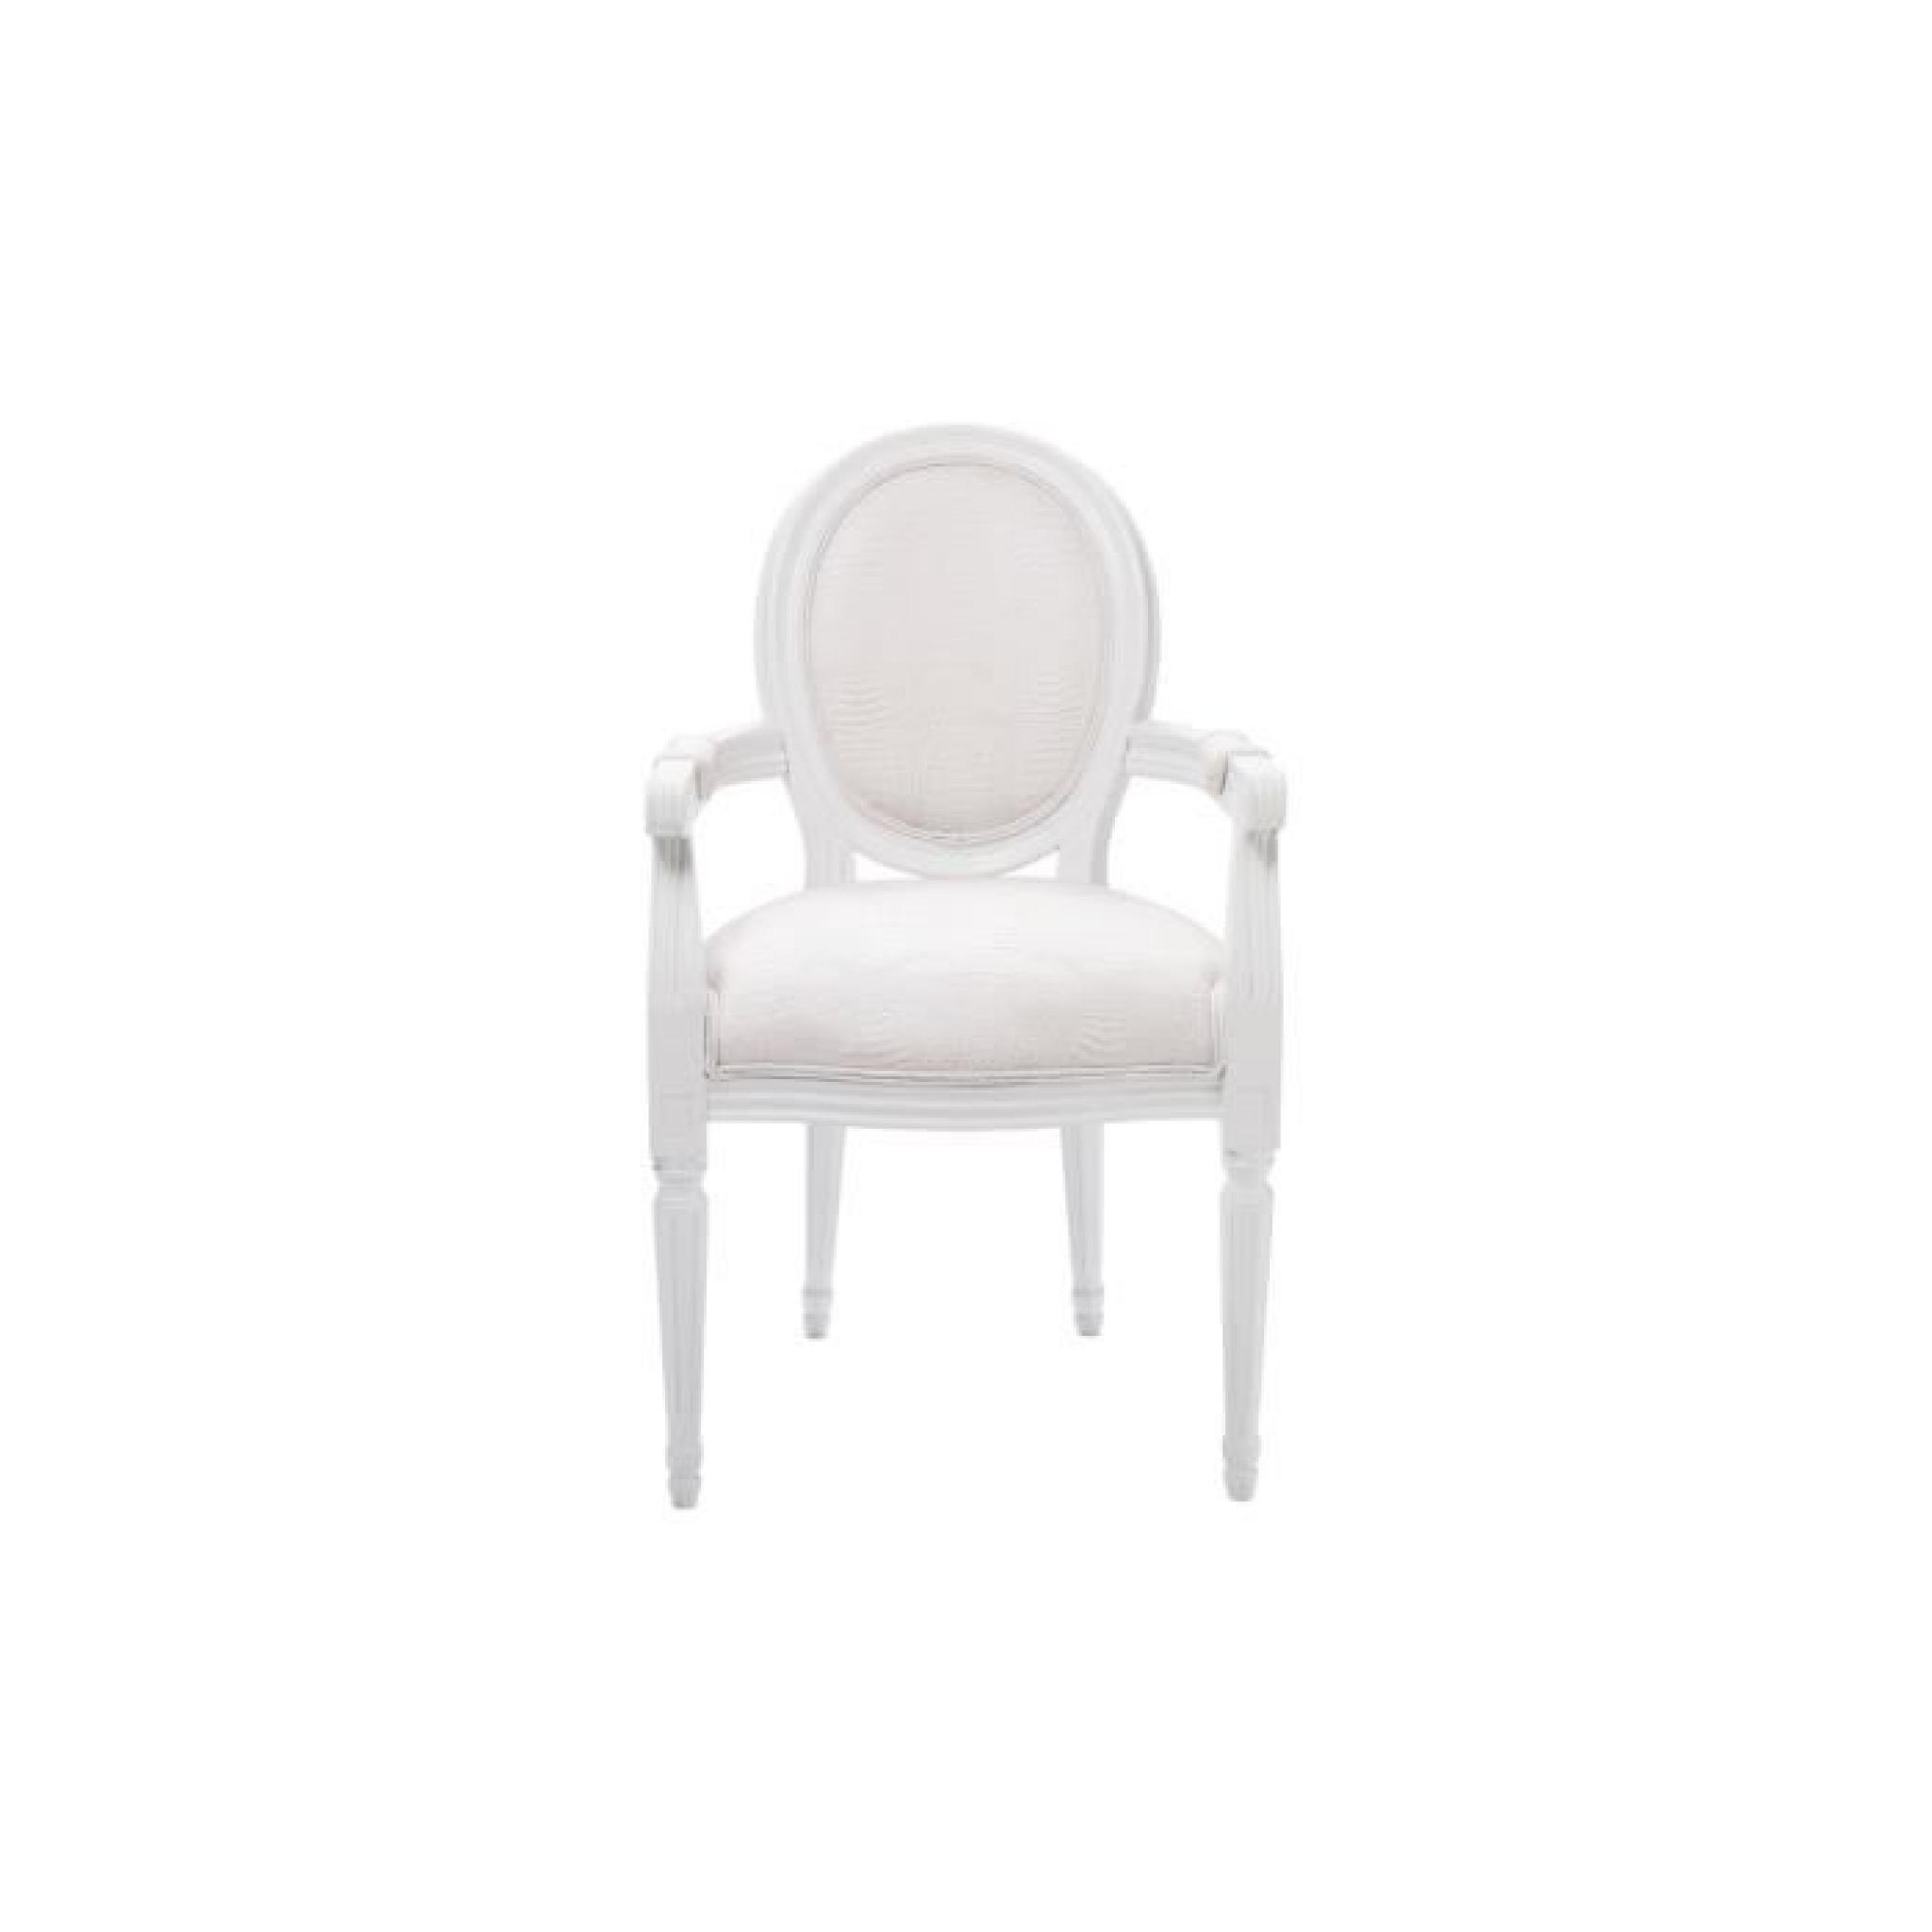 Chaise louis croco blanc avec accoudoirs 